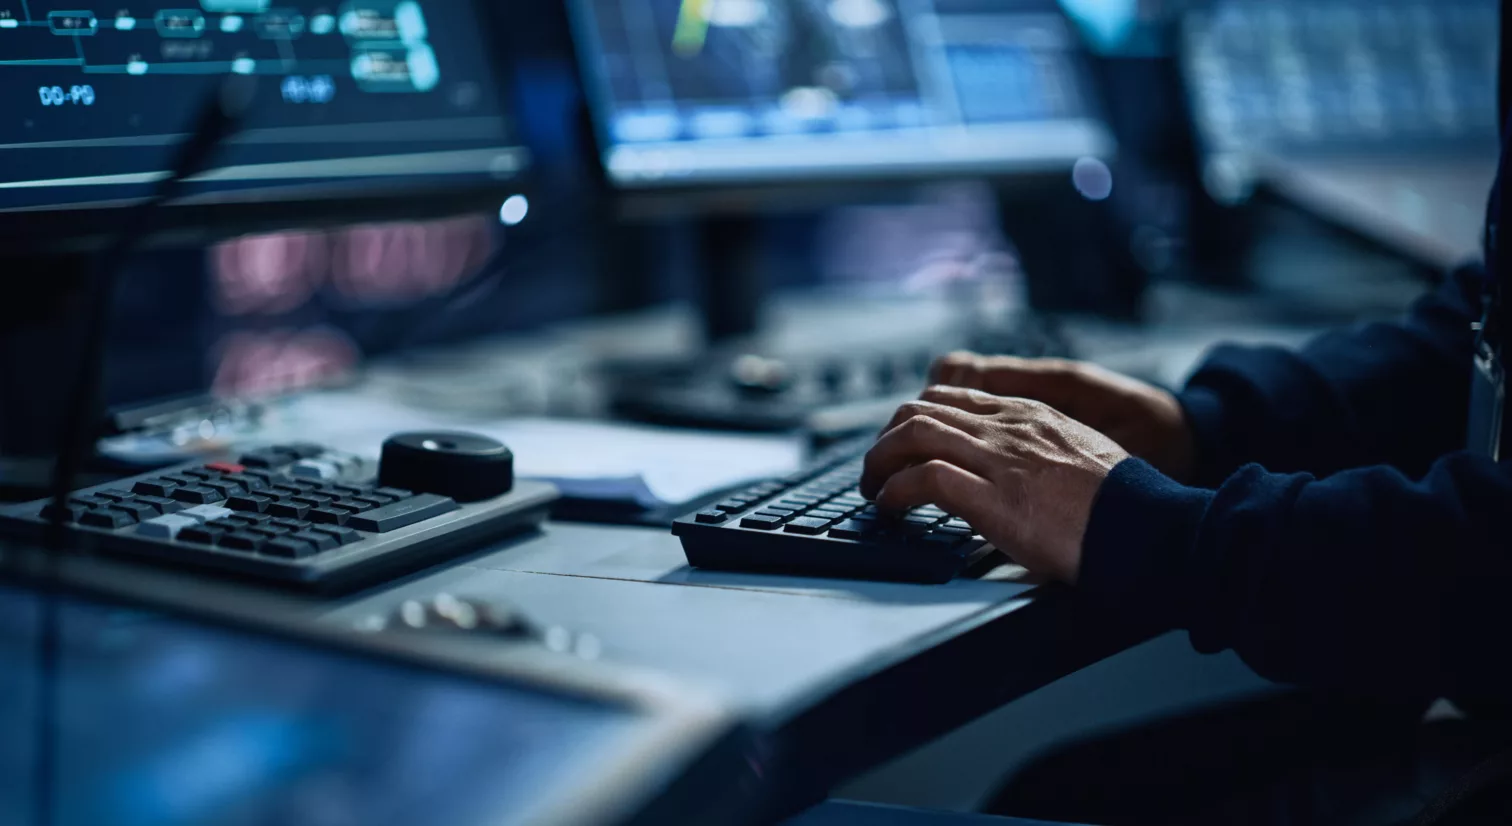 Nærbilde av hender som klikker på et tastatur under flere dataskjermer på en pult. Det er mørkt og det lyser blått fra skjermene.